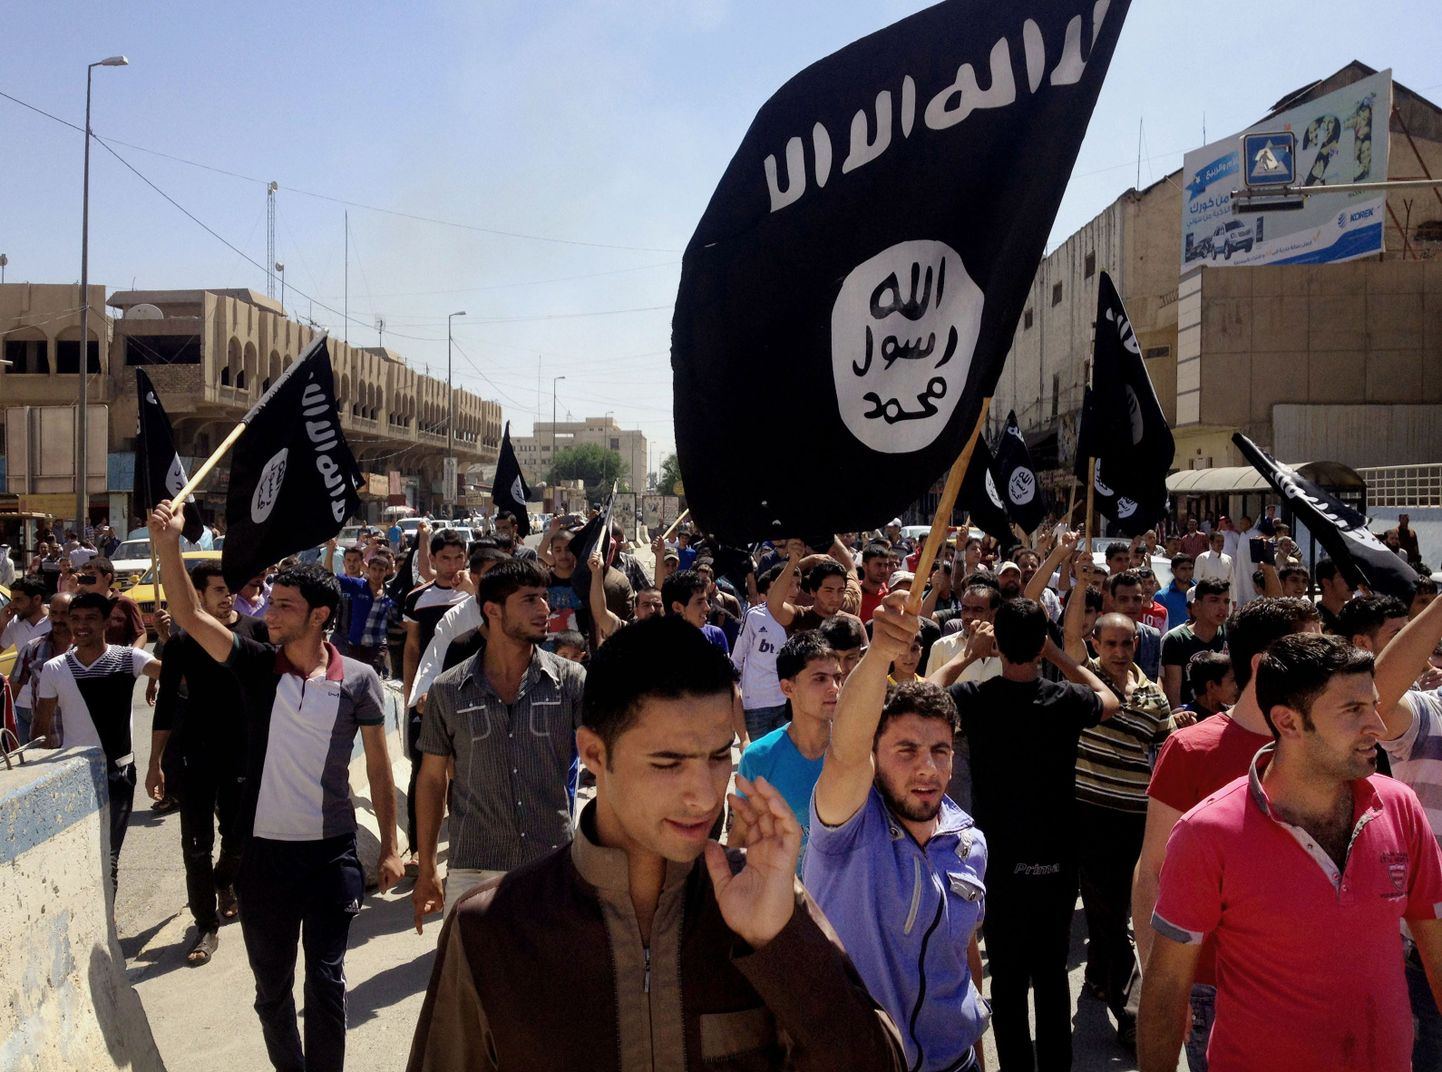 CIA andmetel on Islamiriigil seniarvatust rohkem võitlejaid